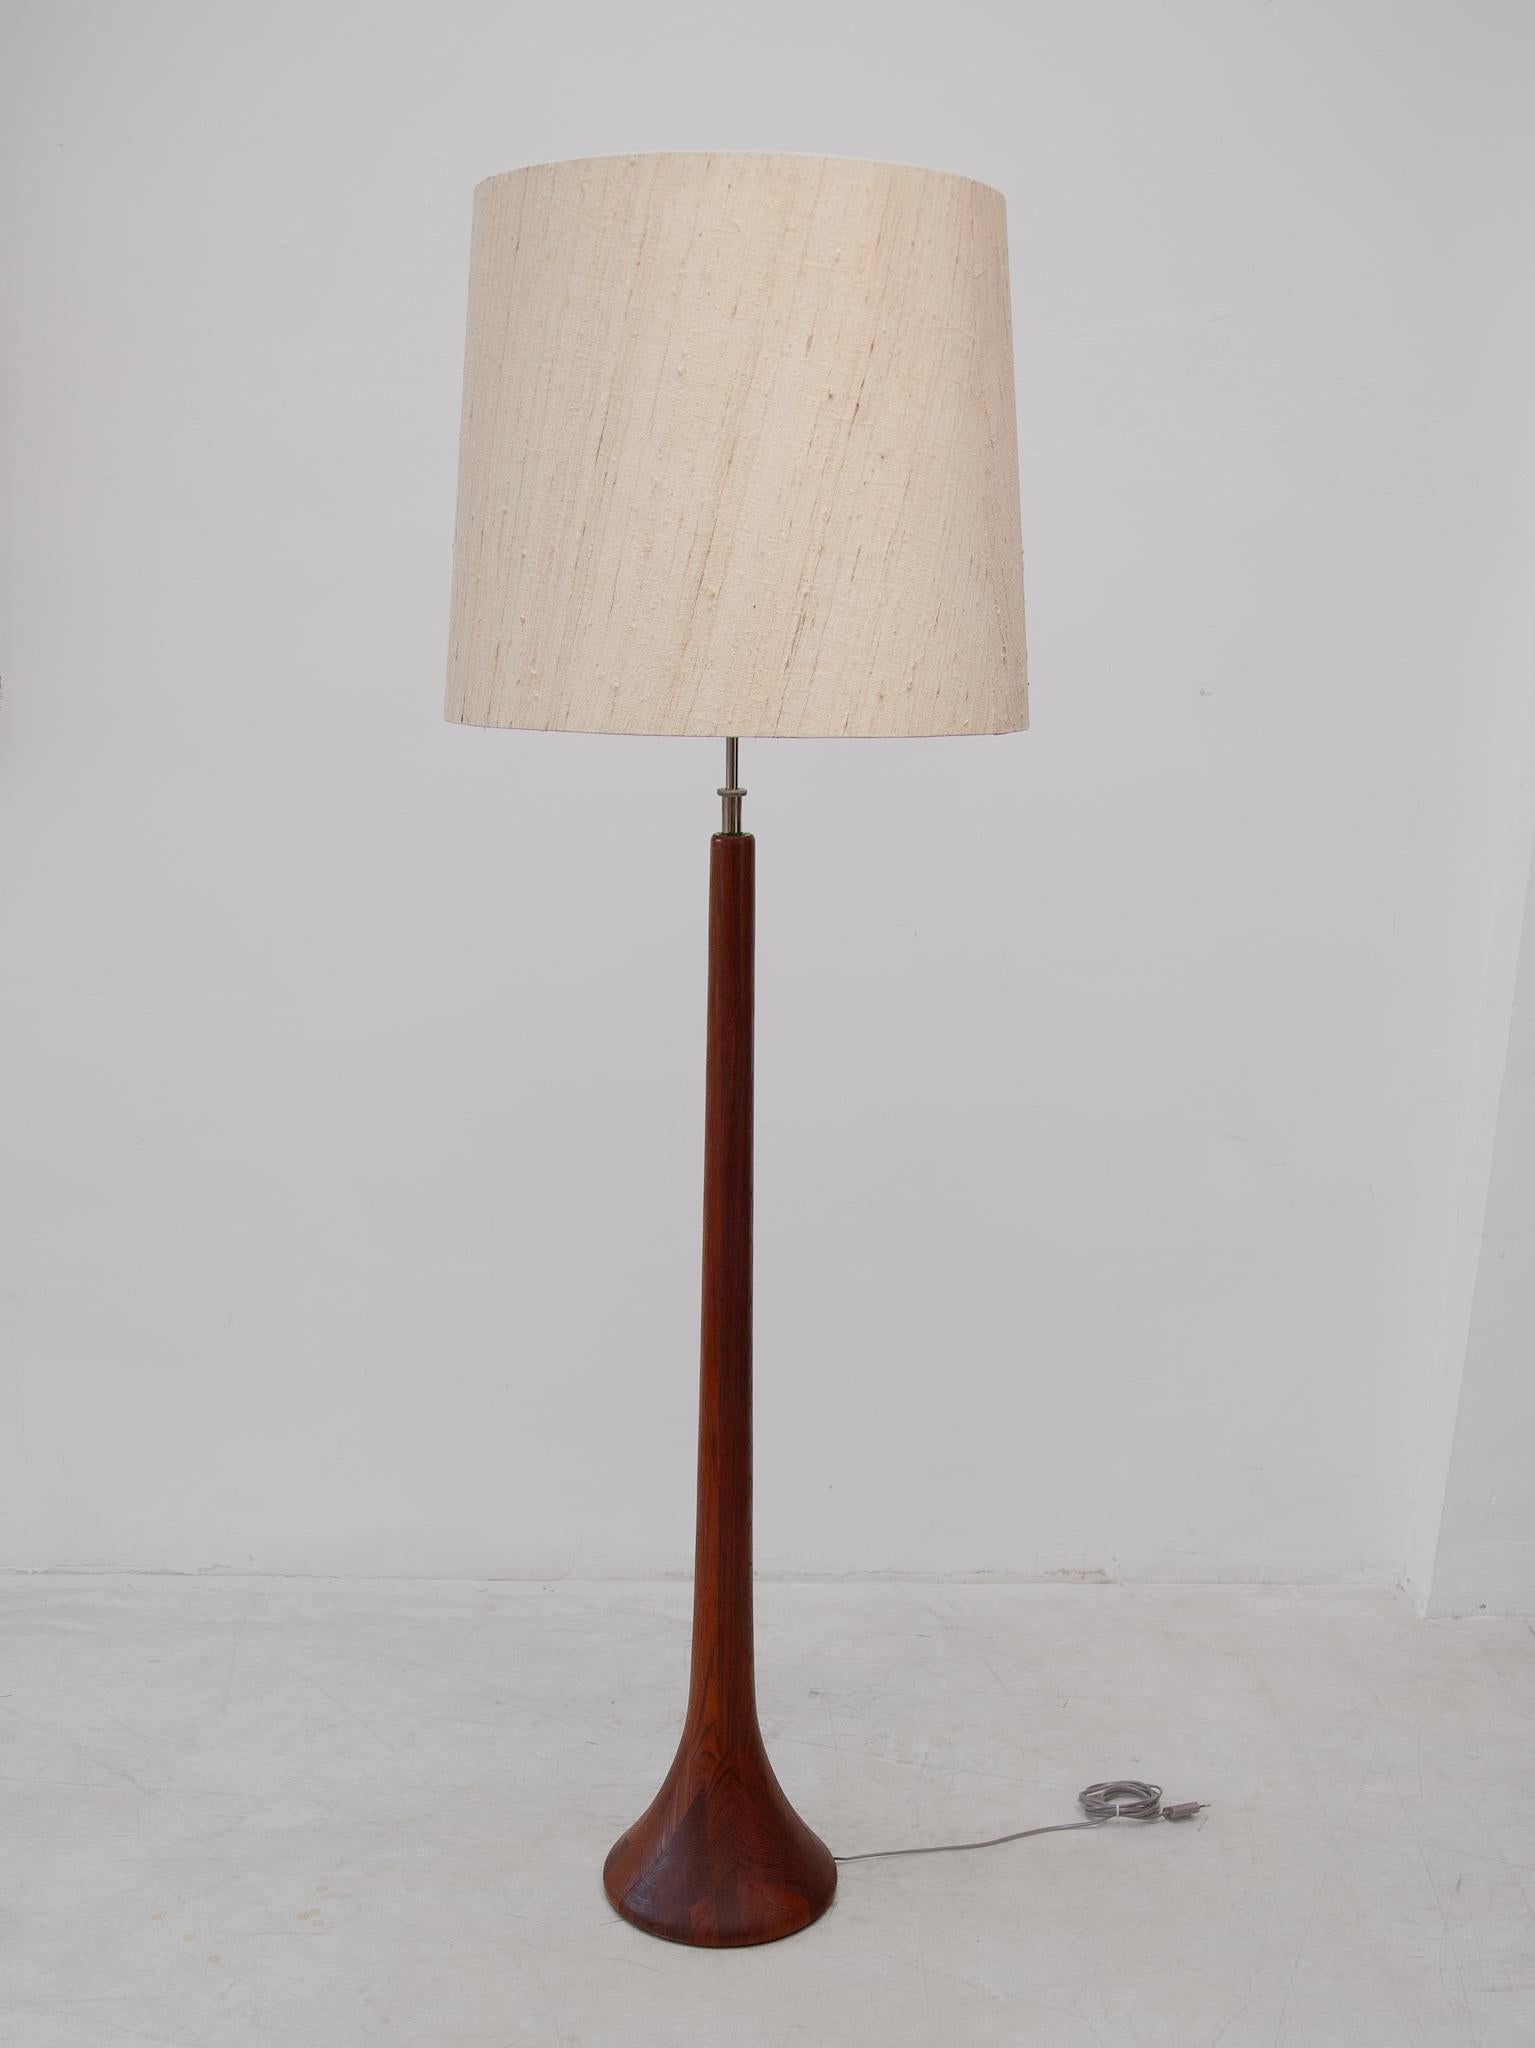 Danish Domus Made in Denmark Solid Teak Floor lamp, 1960s For Sale